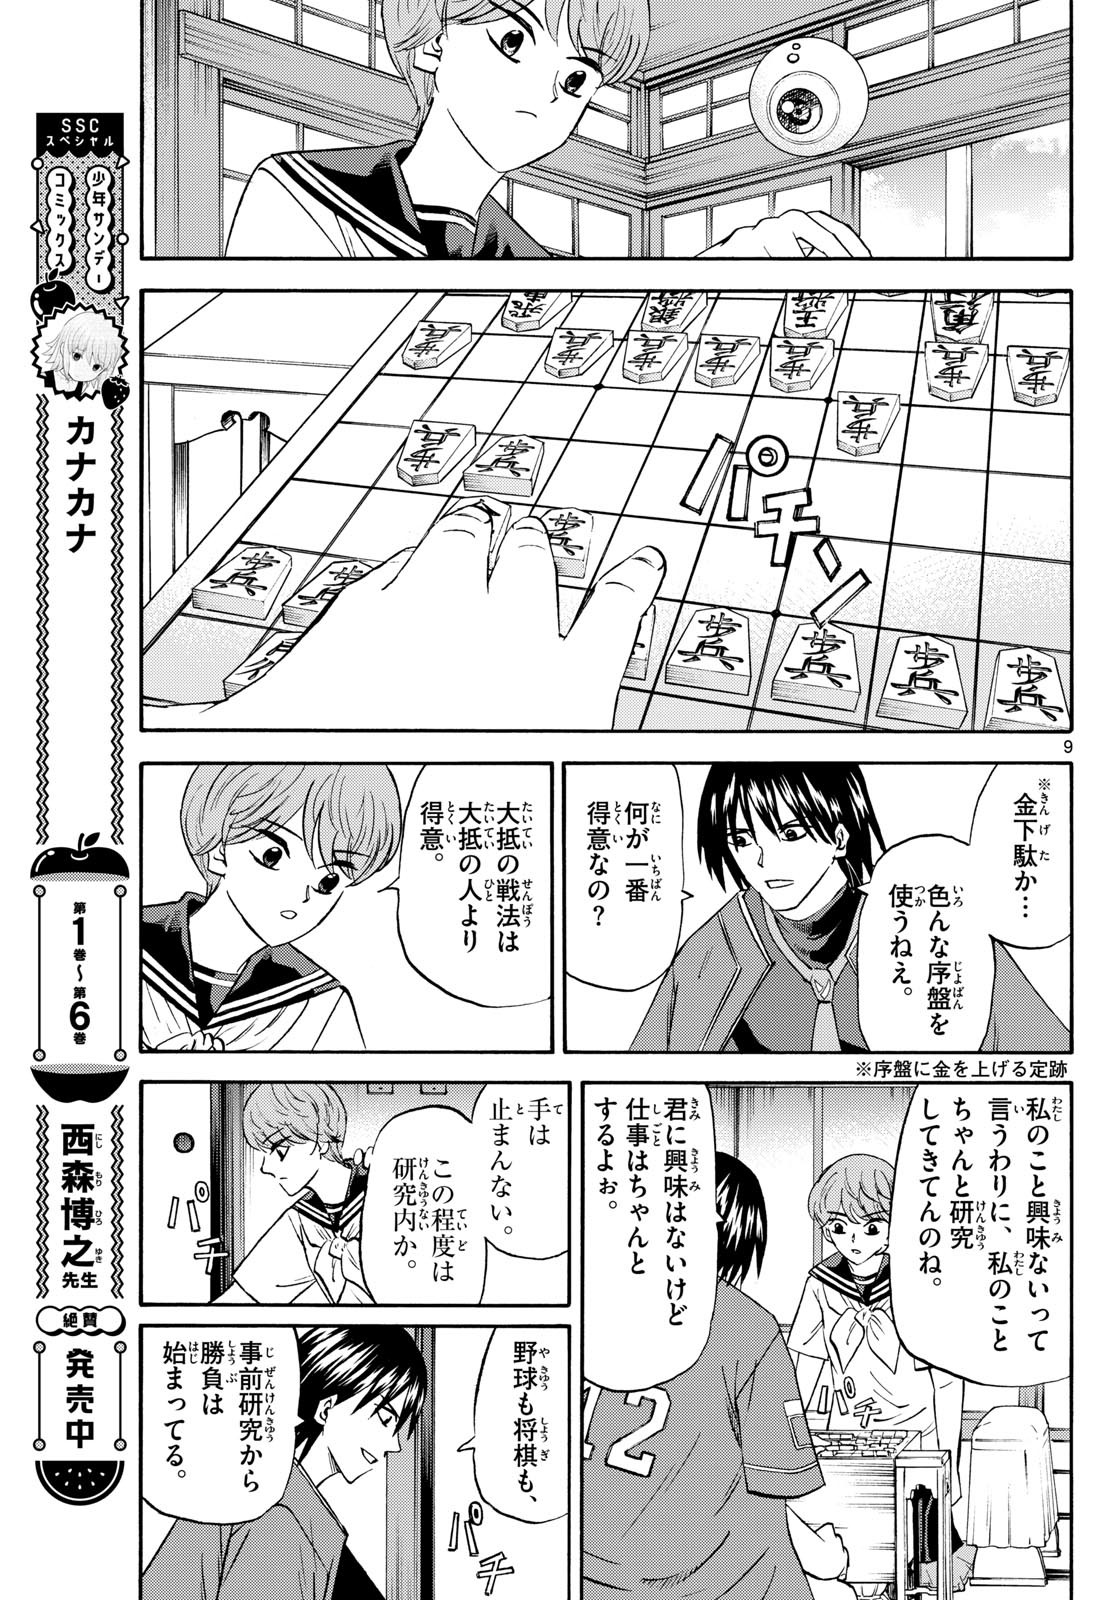 Tatsu to Ichigo - Chapter 197 - Page 9